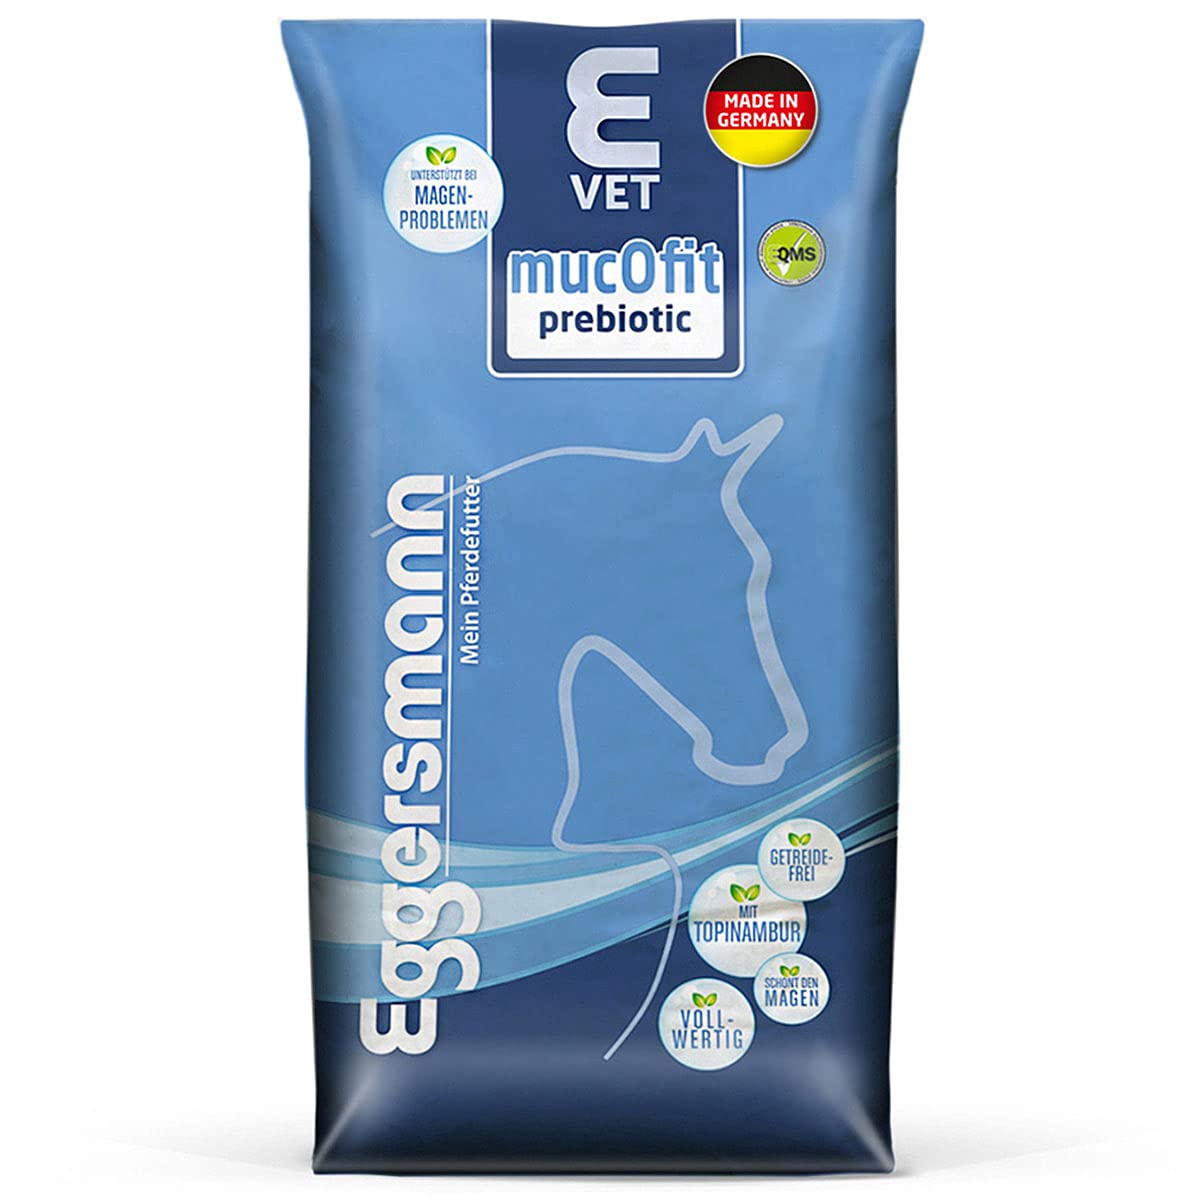 Eggersmann E Vet mucOfit prebiotic – Pferdemüsli ohne Getreide – Pferdefutter für Magen und Darm – 20 kg Sack